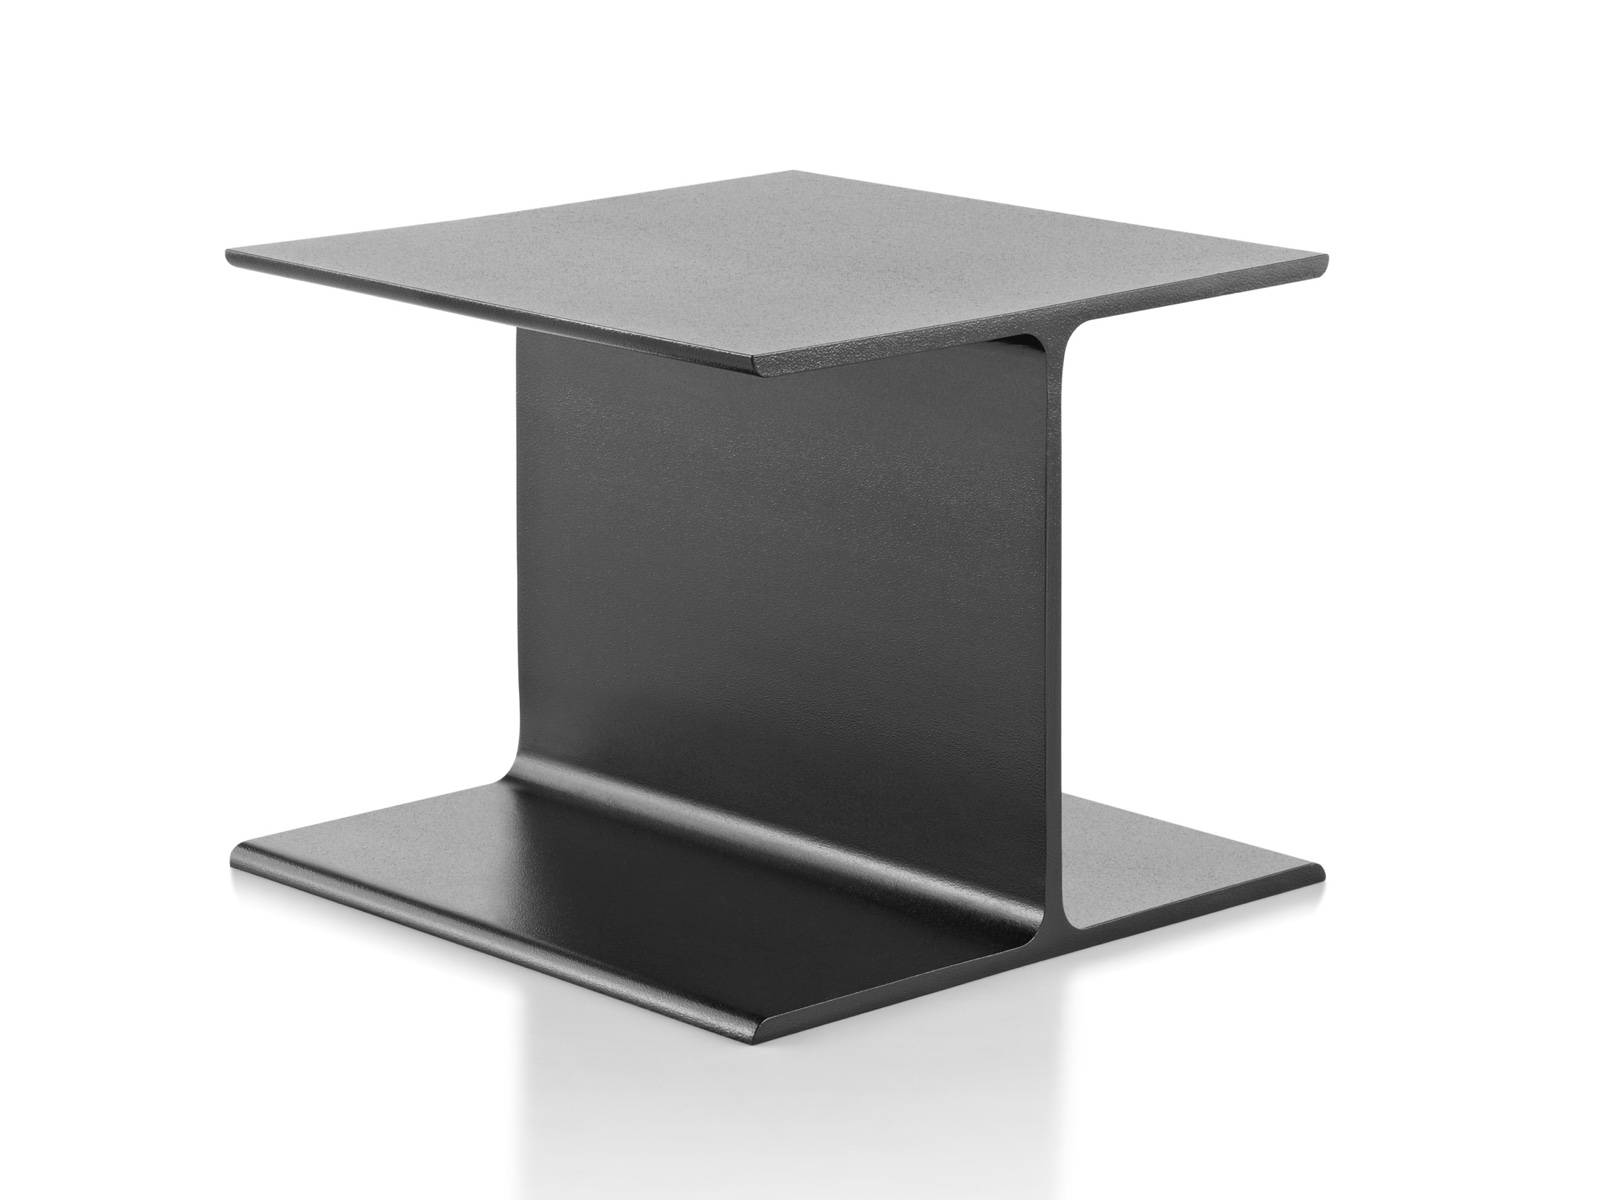 铸铝I Beam的一个角度视图偶尔表裸露的顶部。